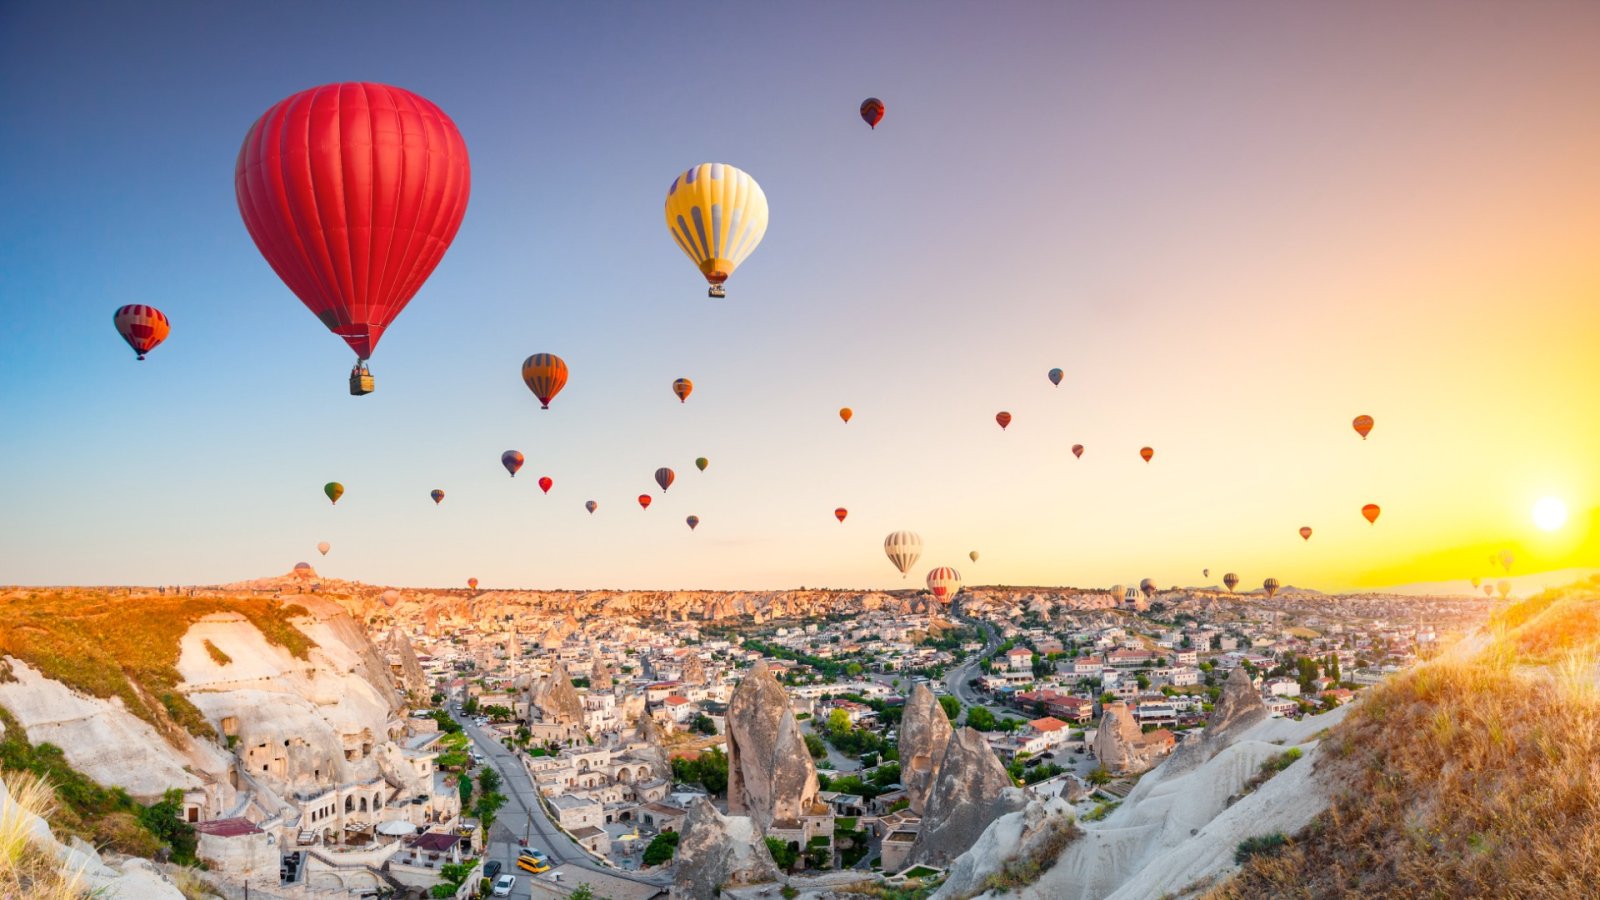 Ζήστε μια μαγική βόλτα με αερόστατο στην Καππαδοκία της Τουρκίας